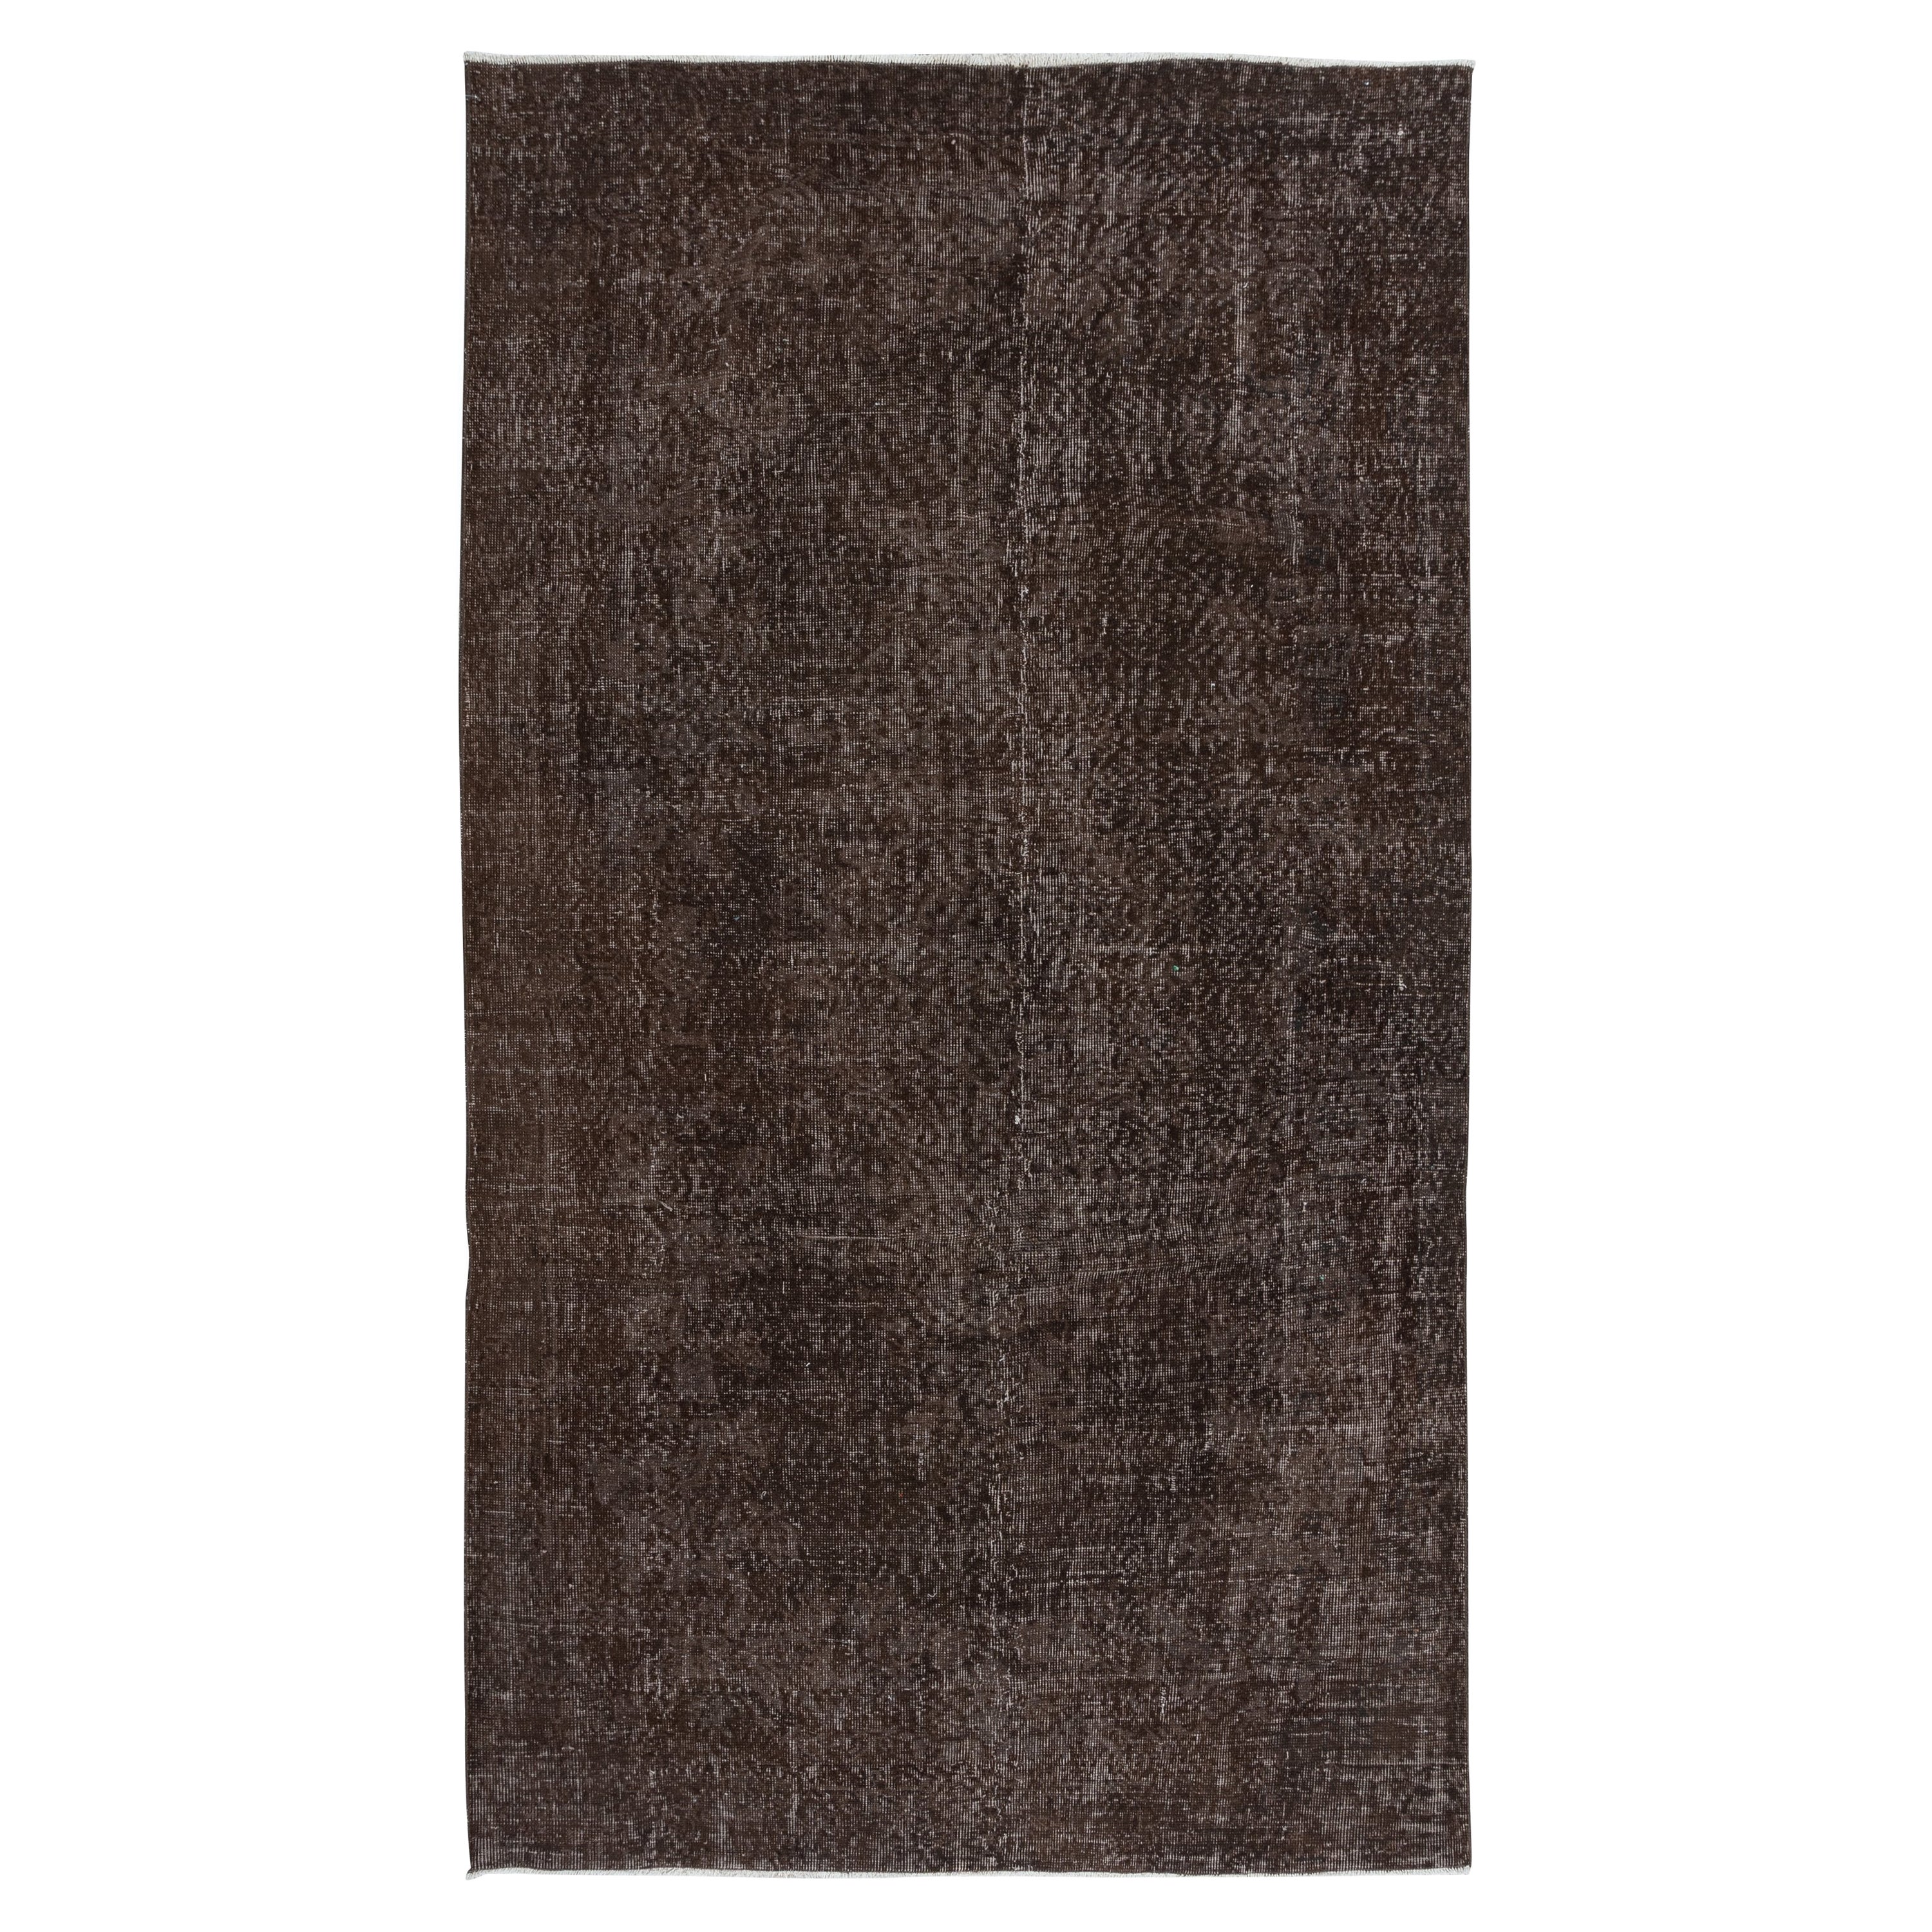 5.2x9.2 Ft Brown Handmade Turkish Area Rug, Bohem Eclectic Room Size Carpet (Tapis de taille de pièce)